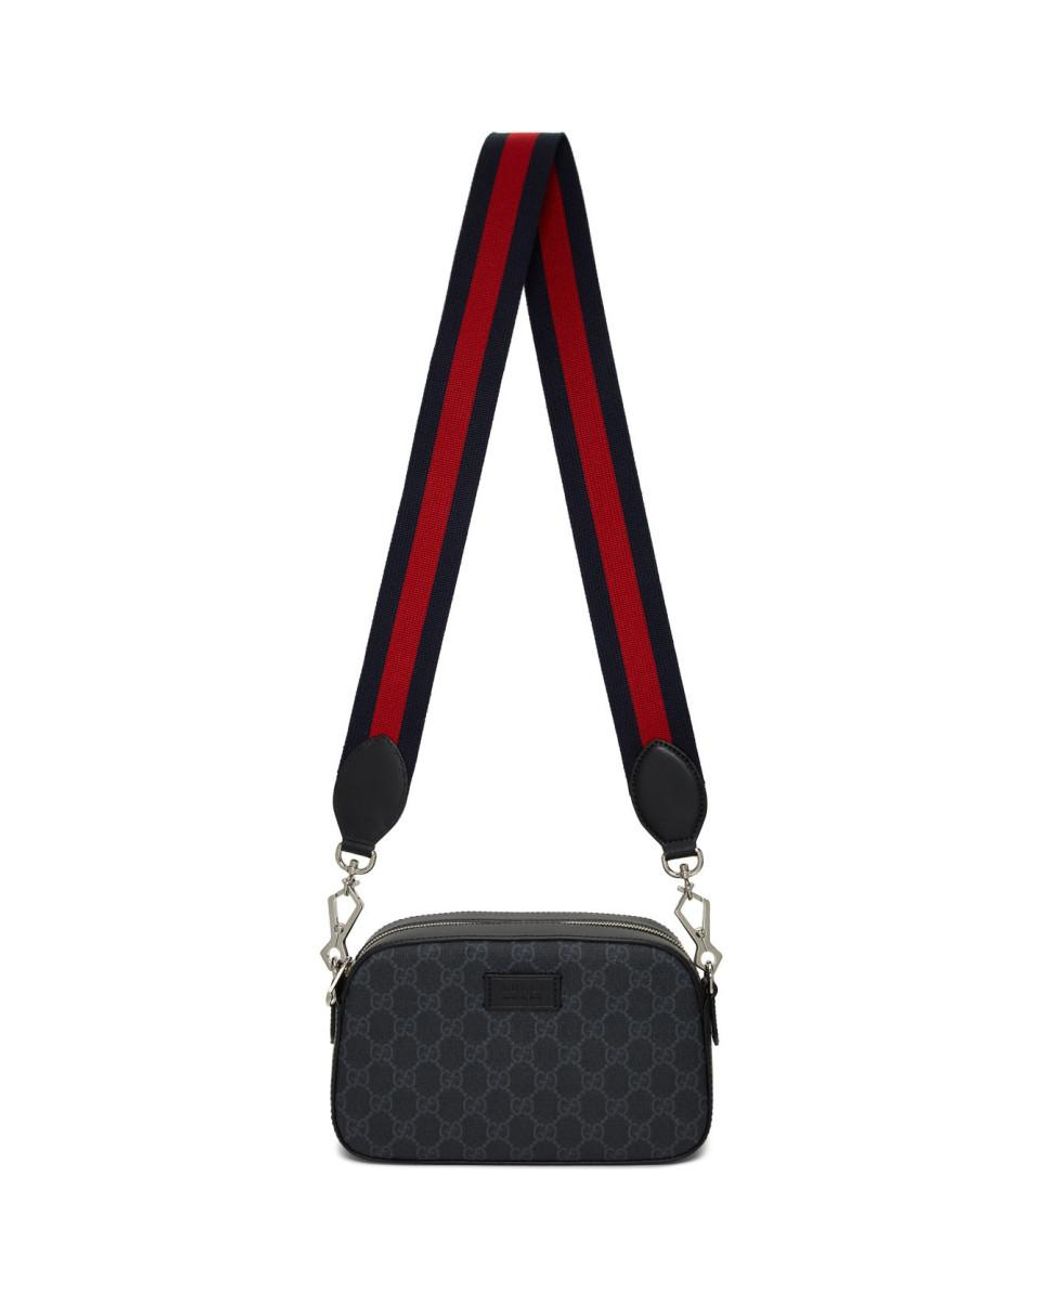 Gucci Canvas Black Small GG Supreme Camera Bag for Men - Lyst